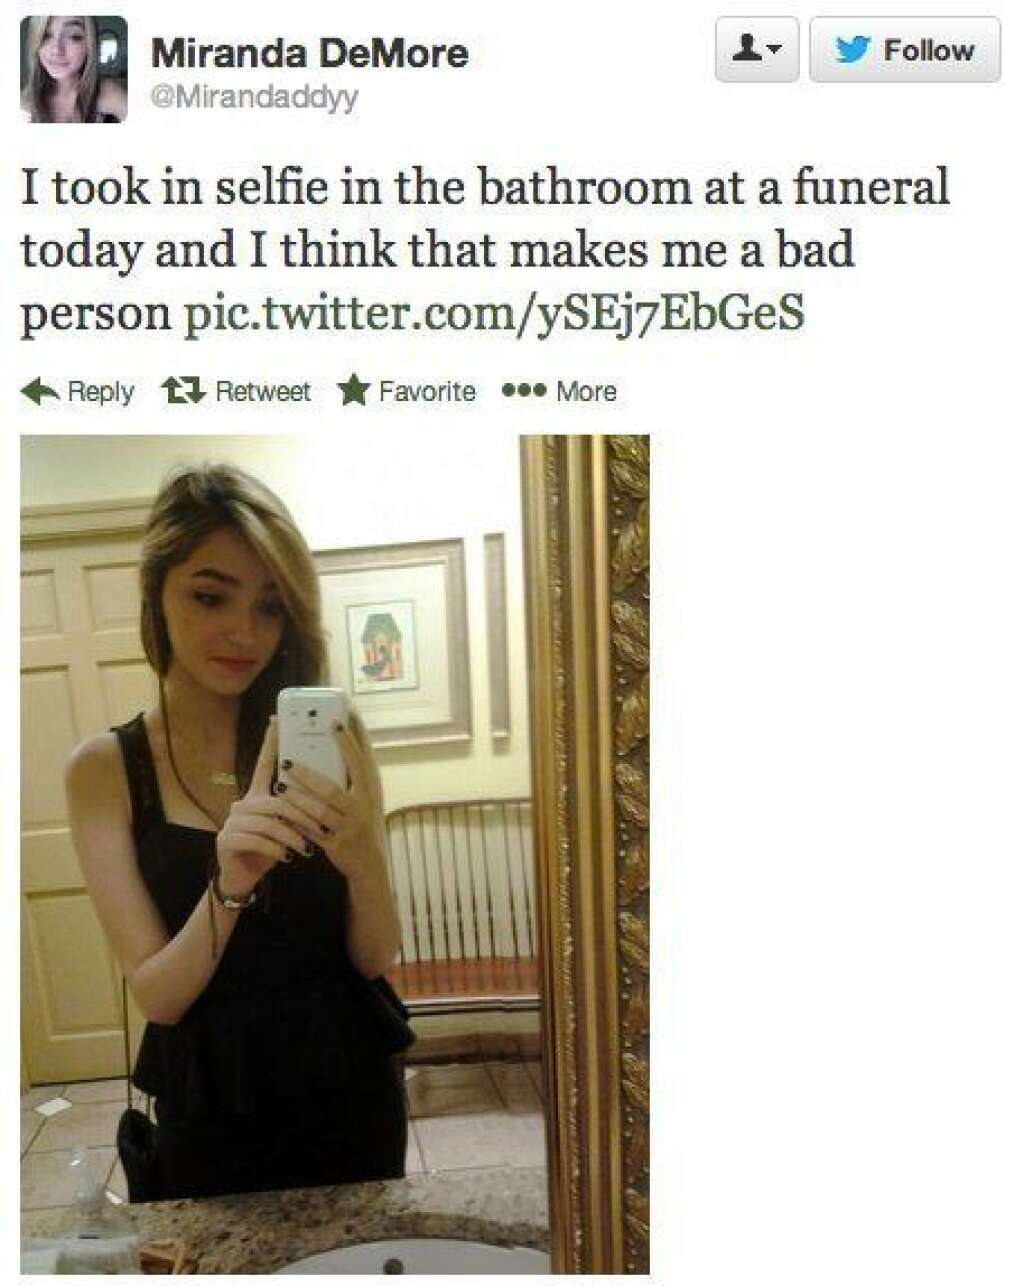 Selfies at Funerals - "Aujourd'hui j'ai pris un selfie dans les toilettes lors d'un enterrement et je pense que ça fait de moi une mauvaise personne"